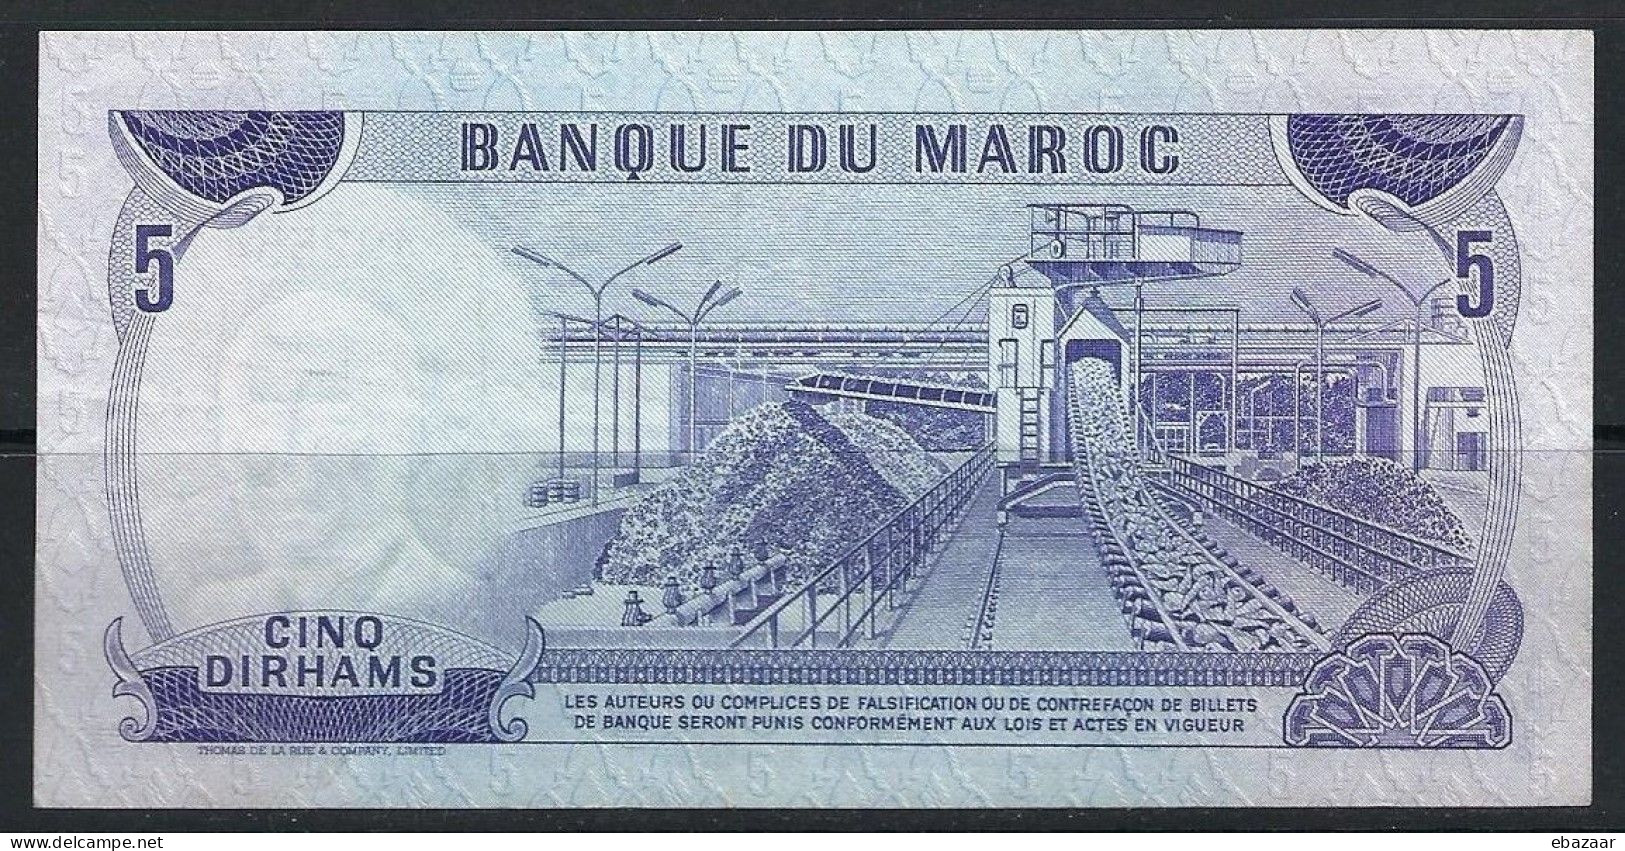 Morocco 1970 Banque Du Maroc 5 Dirhams Banknote P-56a VF++ Crisp - Morocco